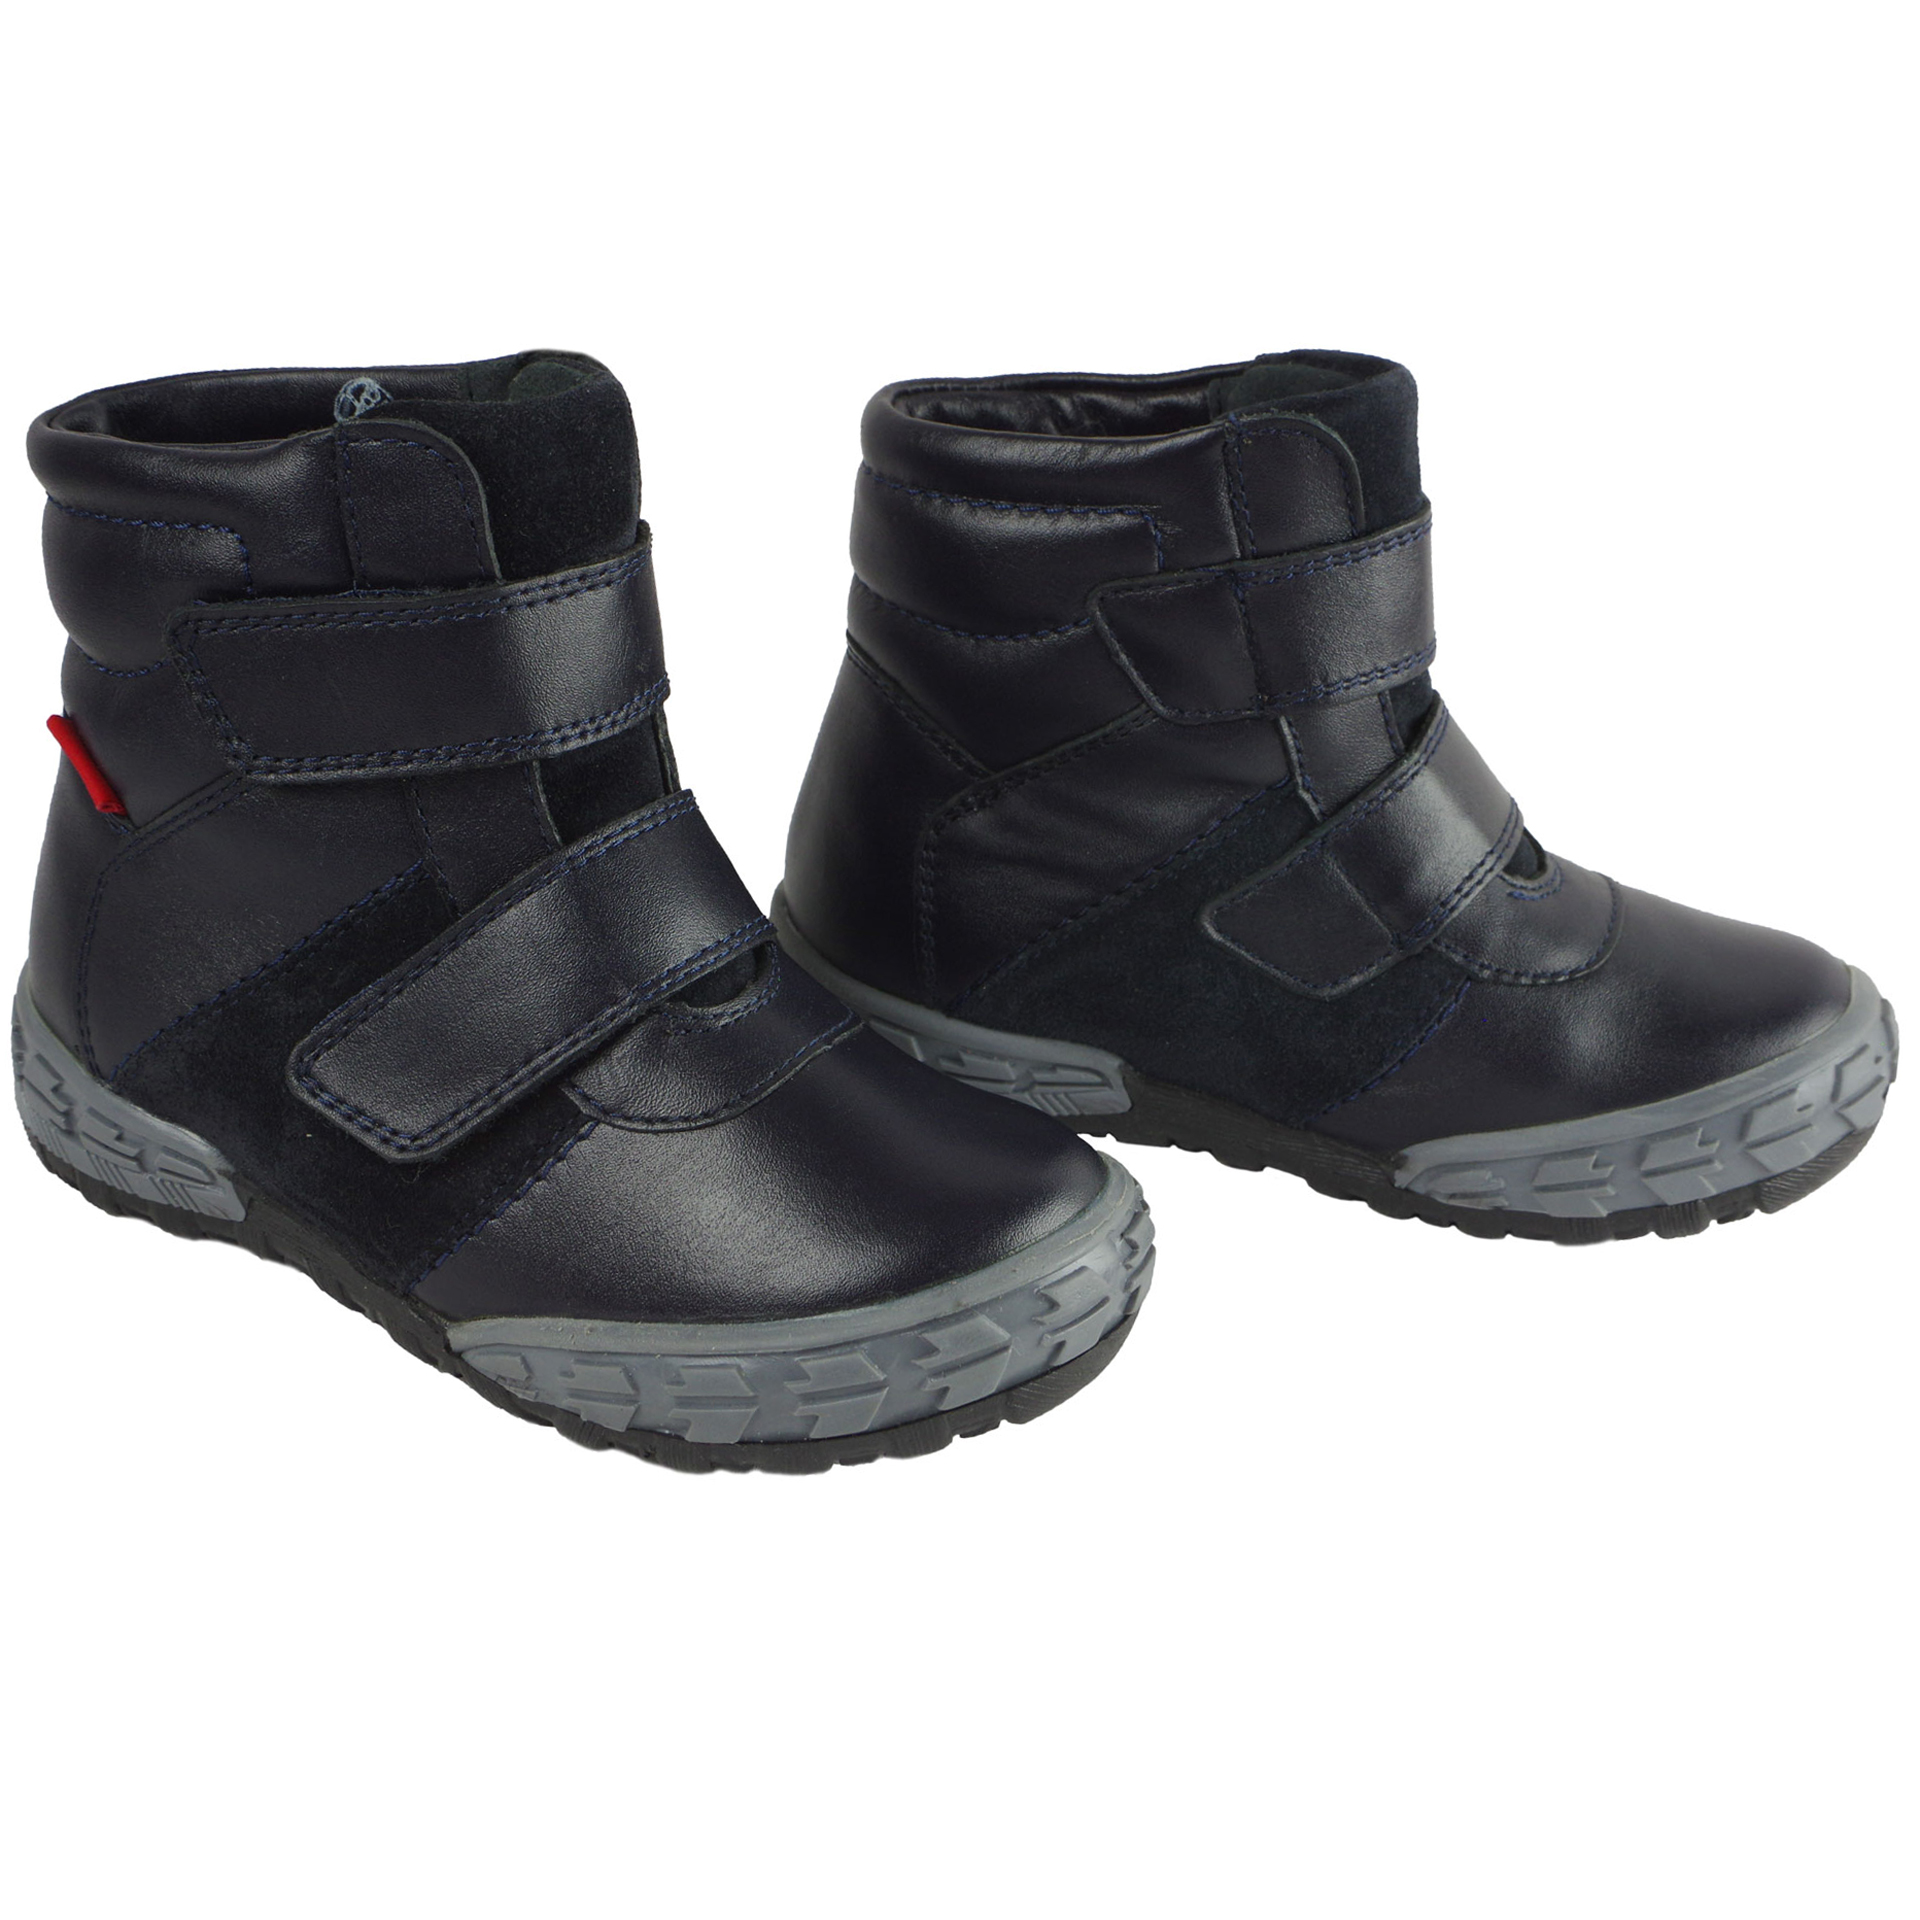 Зимові чоботи (2052) для хлопчика, матеріал Натуральна шкіра, Темно-синій колір, 23-26 розміри – Sole Kids. Фото 5